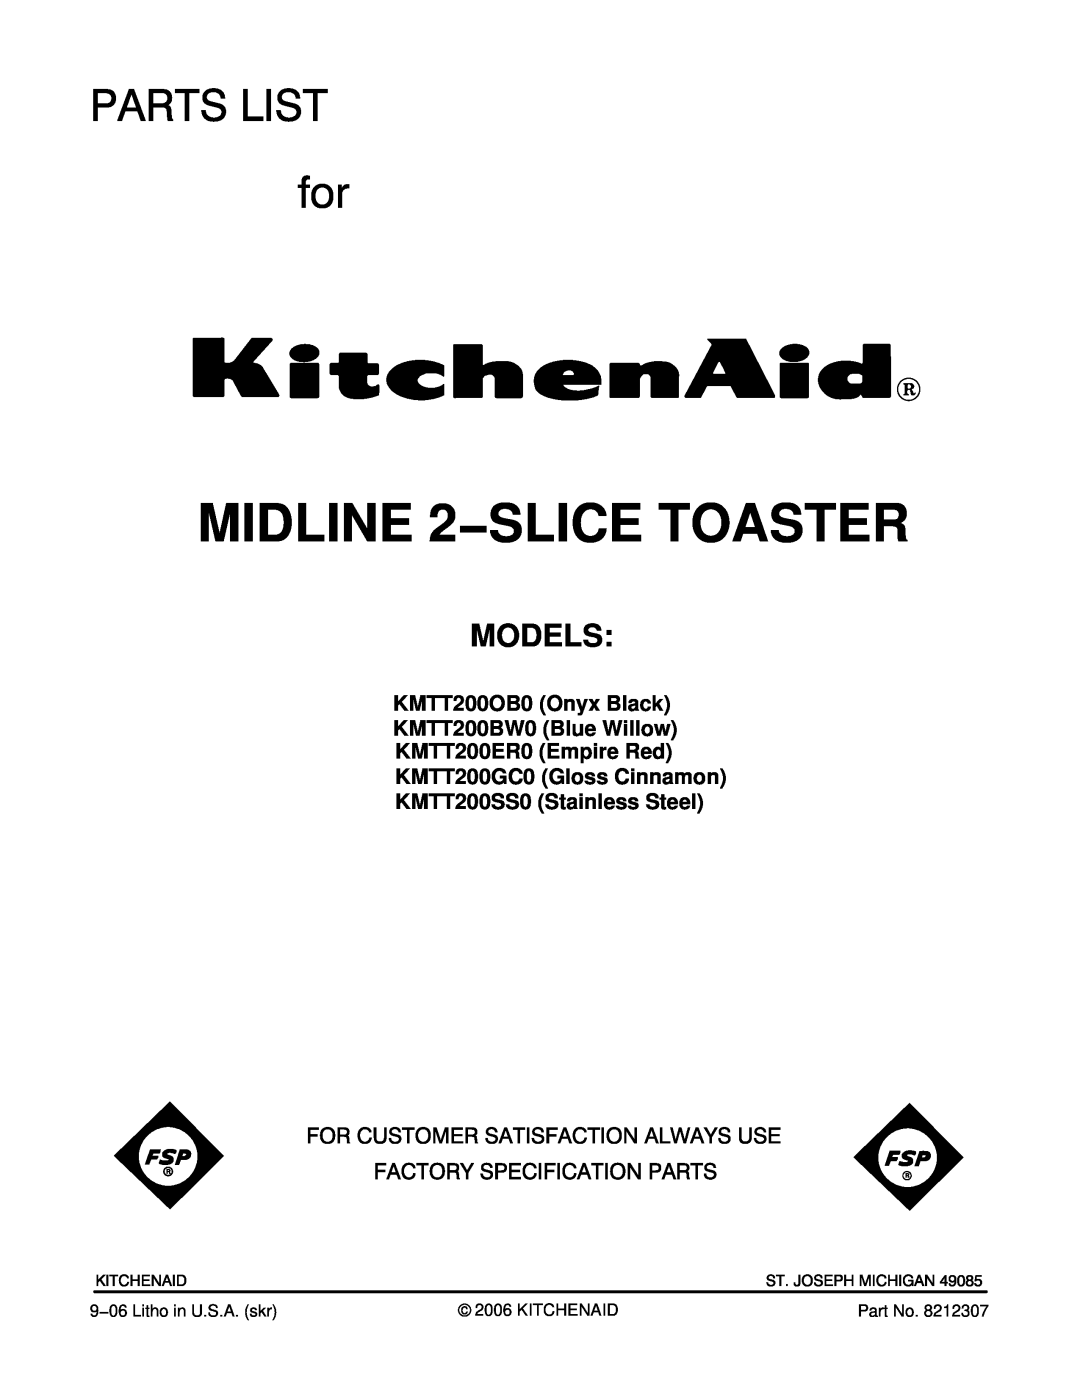 KitchenAid KMTT200ER0 manual Models, KMTT200OB0 Onyx Black KMTT200BW0 Blue Willow, KMTT200SS0 Stainless Steel 